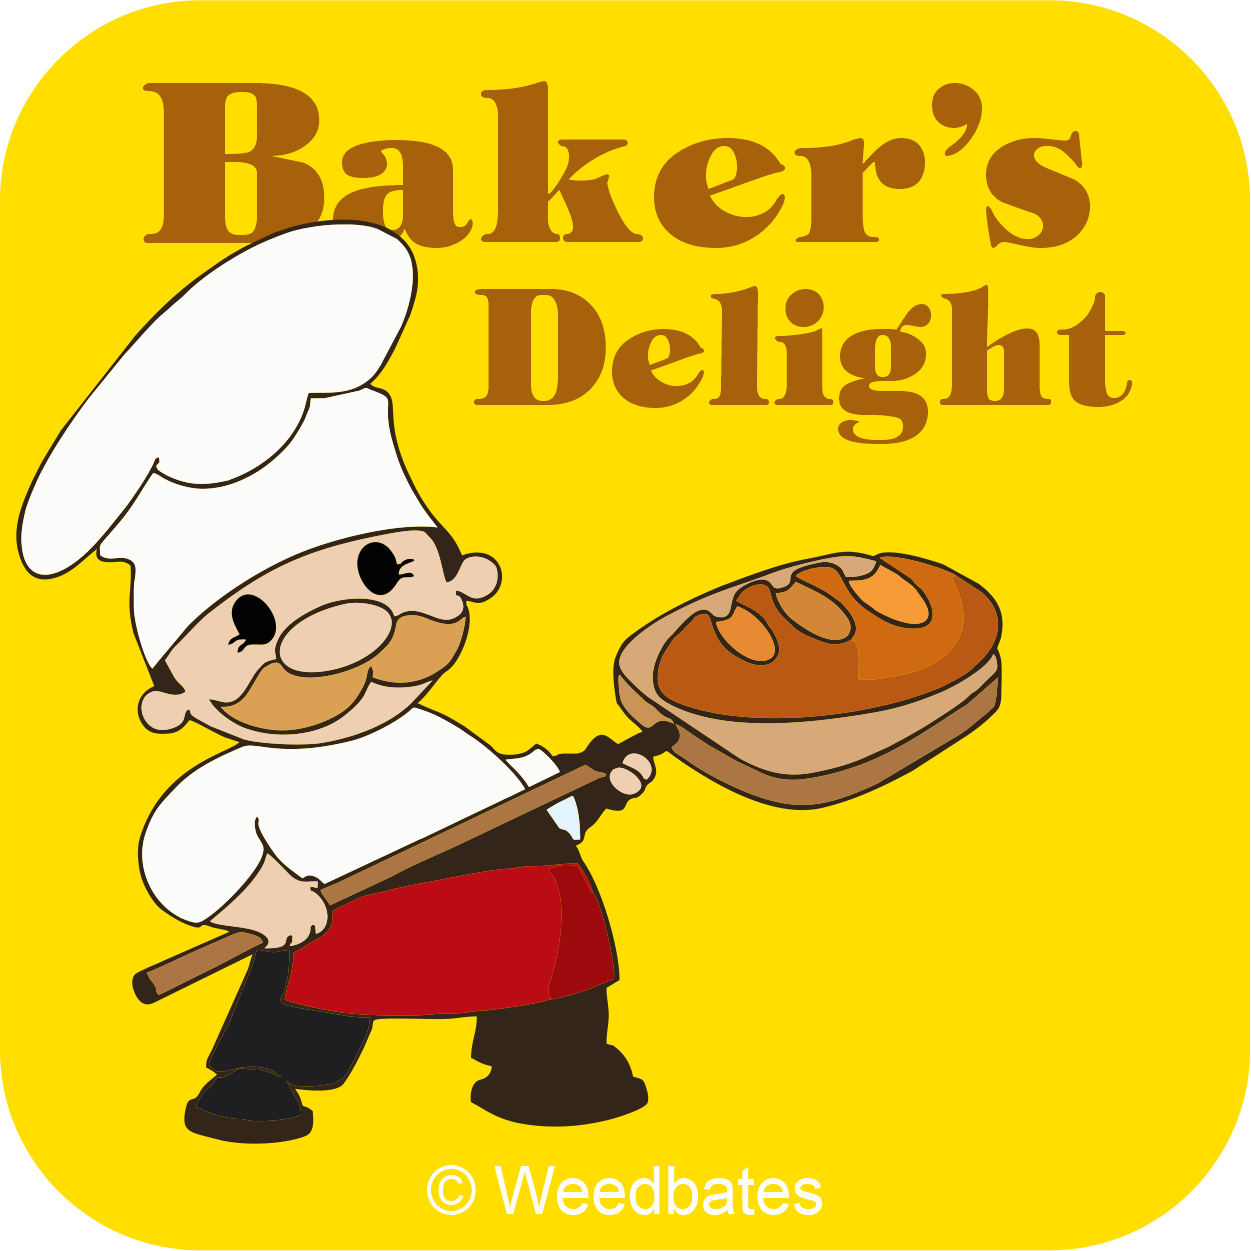 Baker's Delight strain